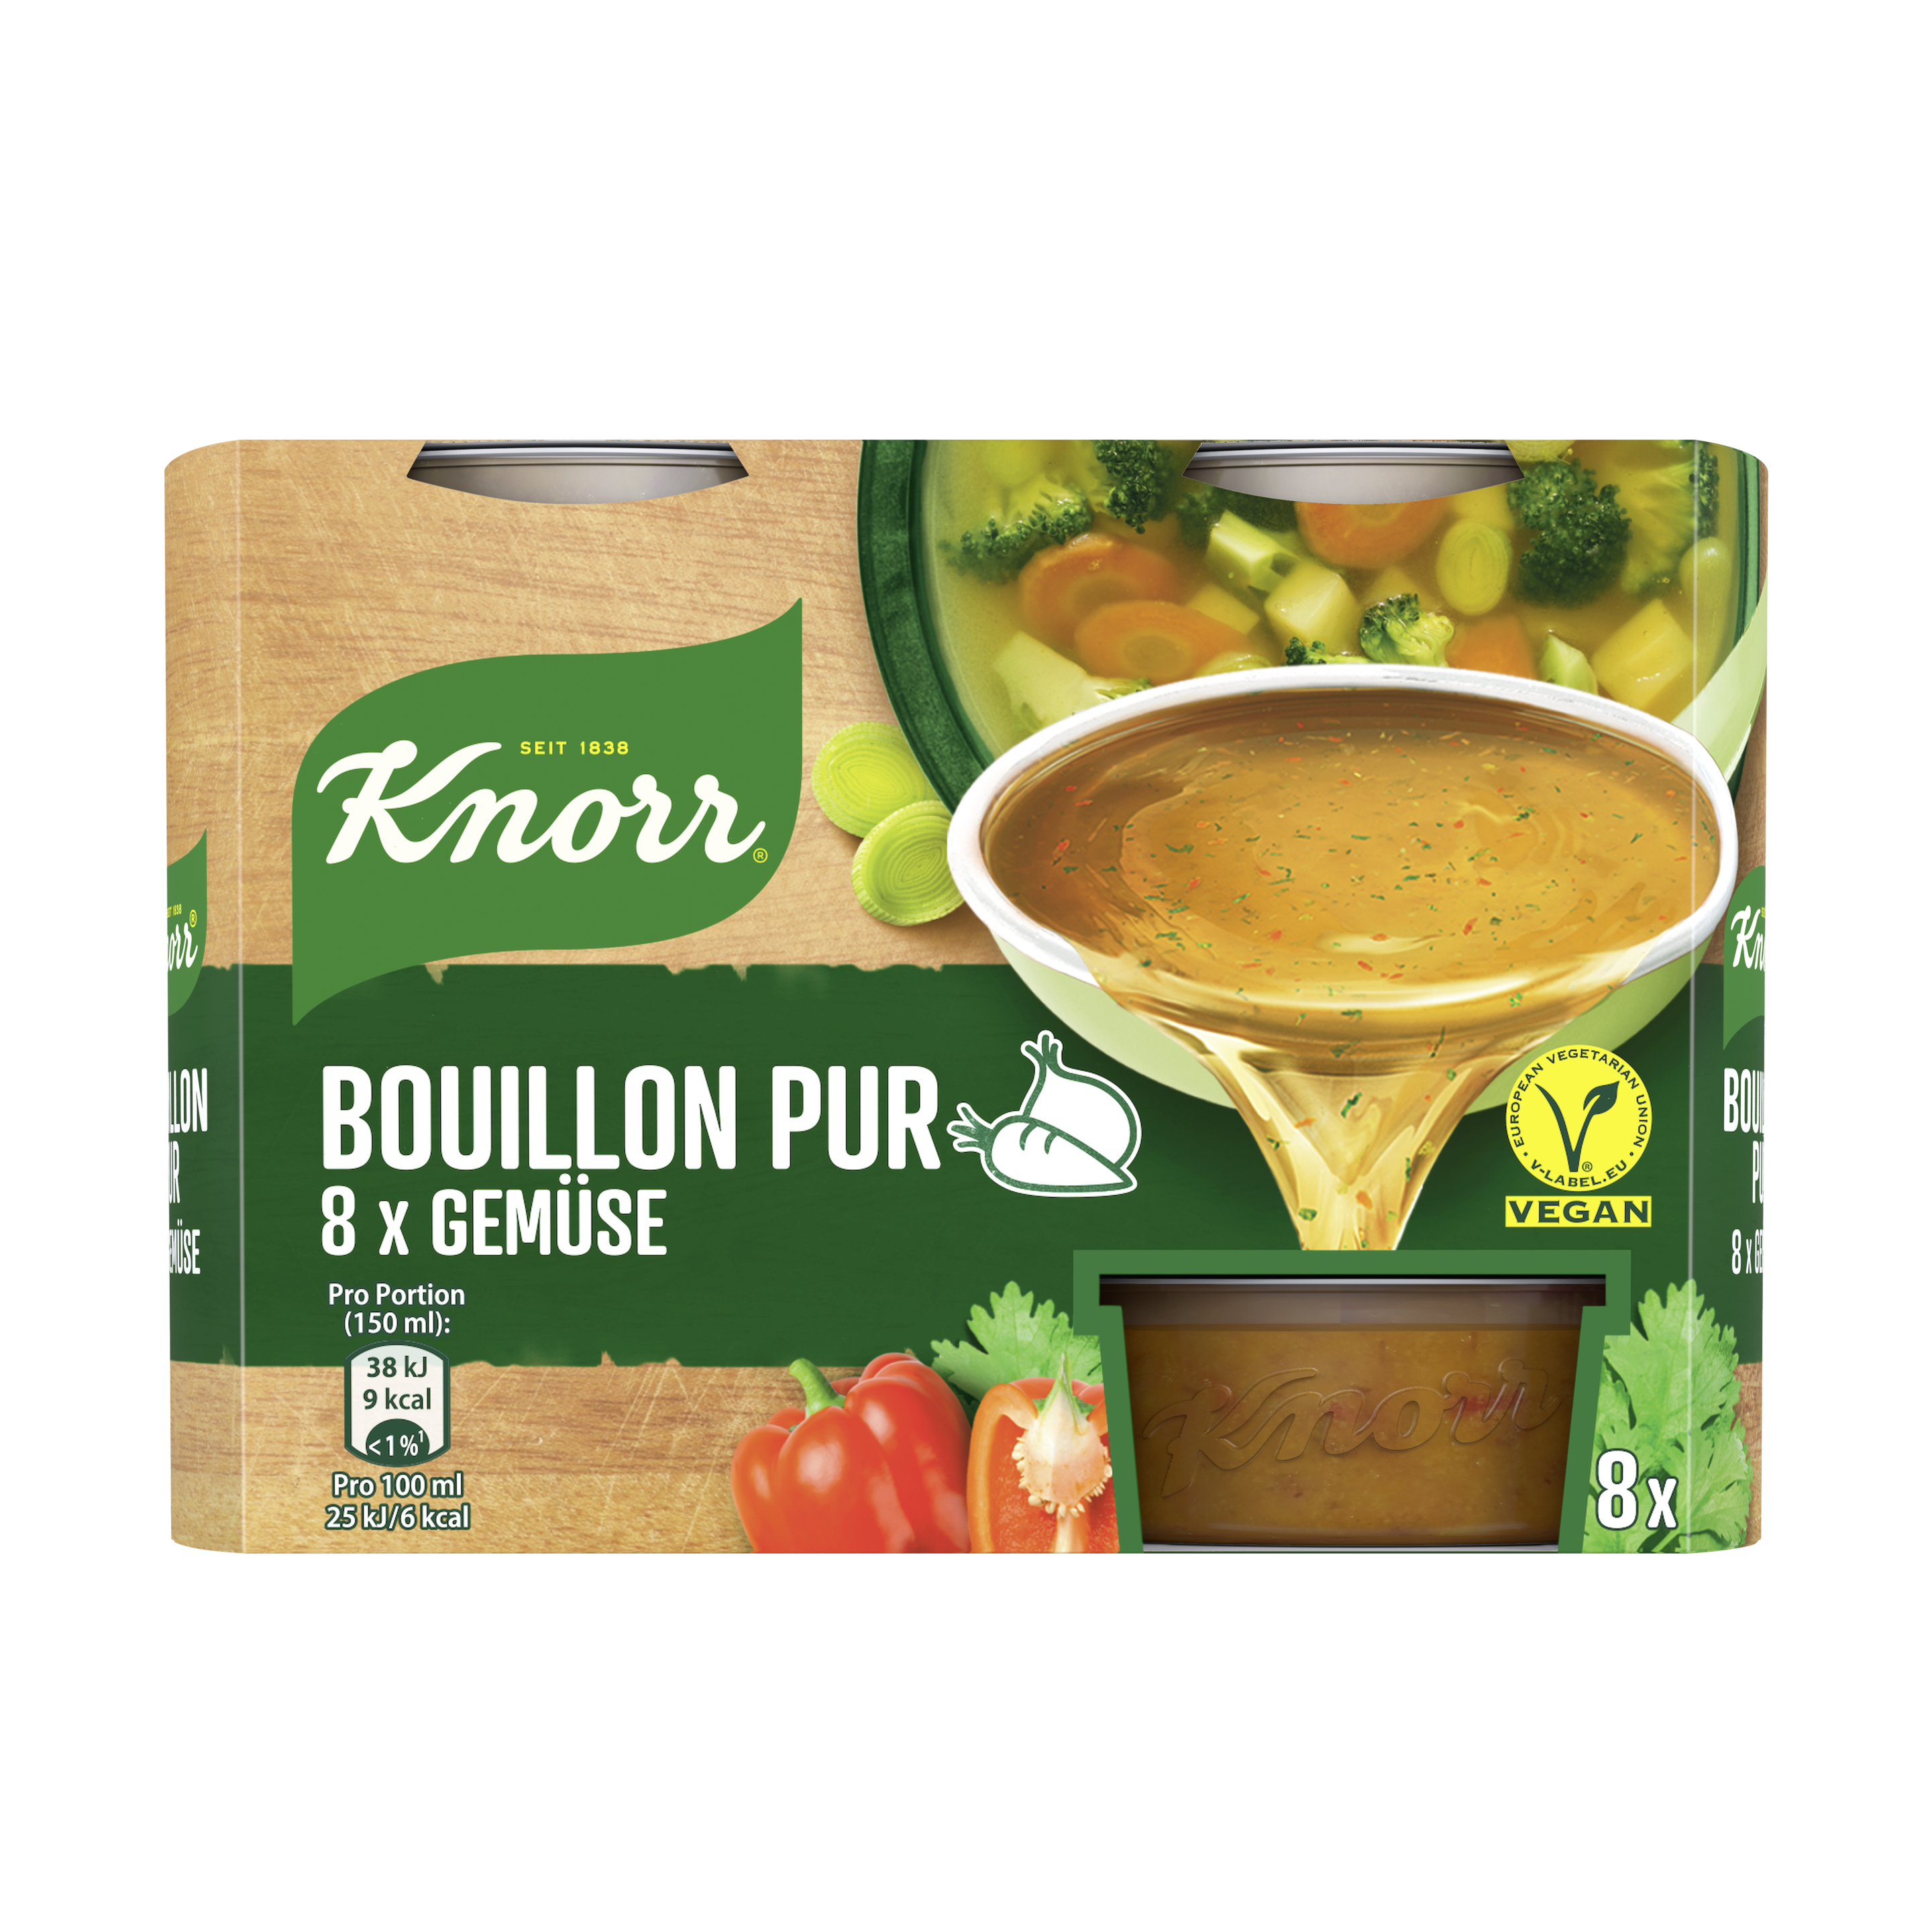 Knorr Bouillon Pur Gemüse Bouillon 27 Portionen